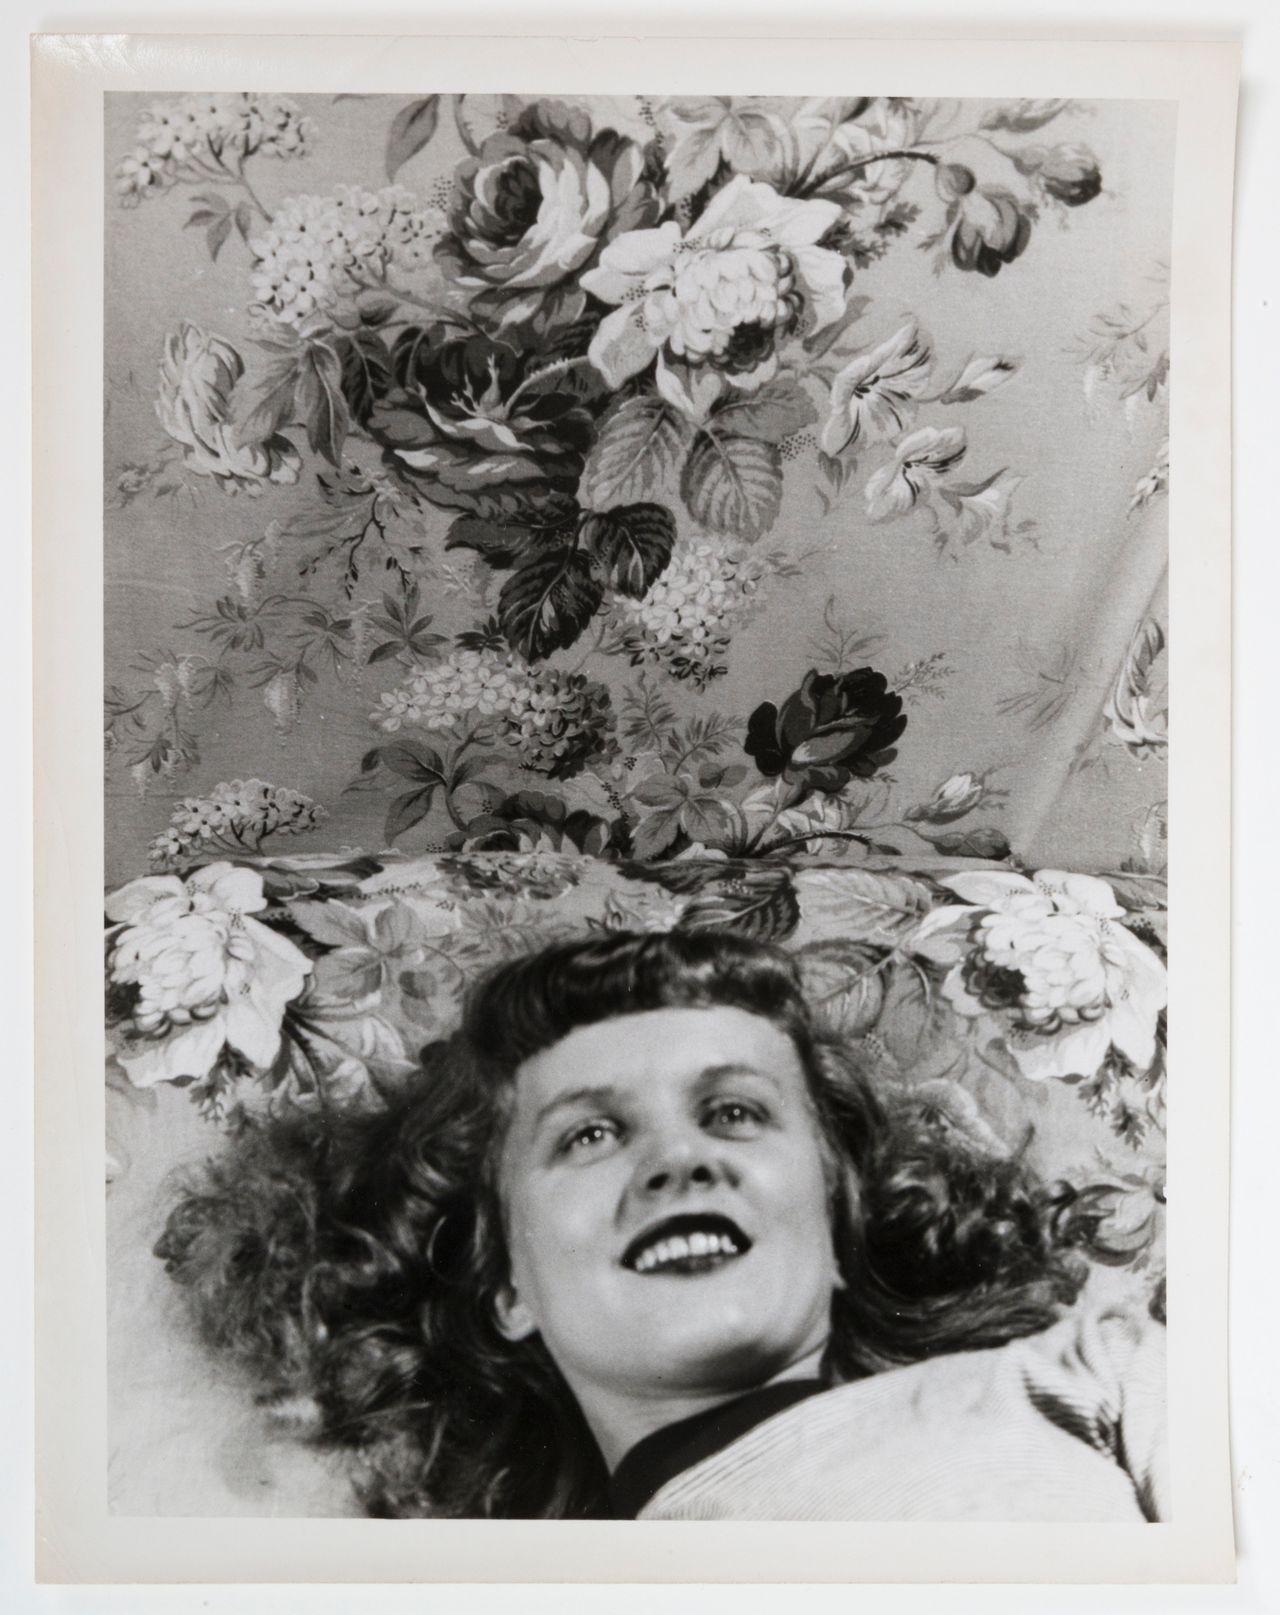 Eugene Von Bruenchenhein, "Untitled (Pillow talk with flowers)," 1940s, gelatin silver print.